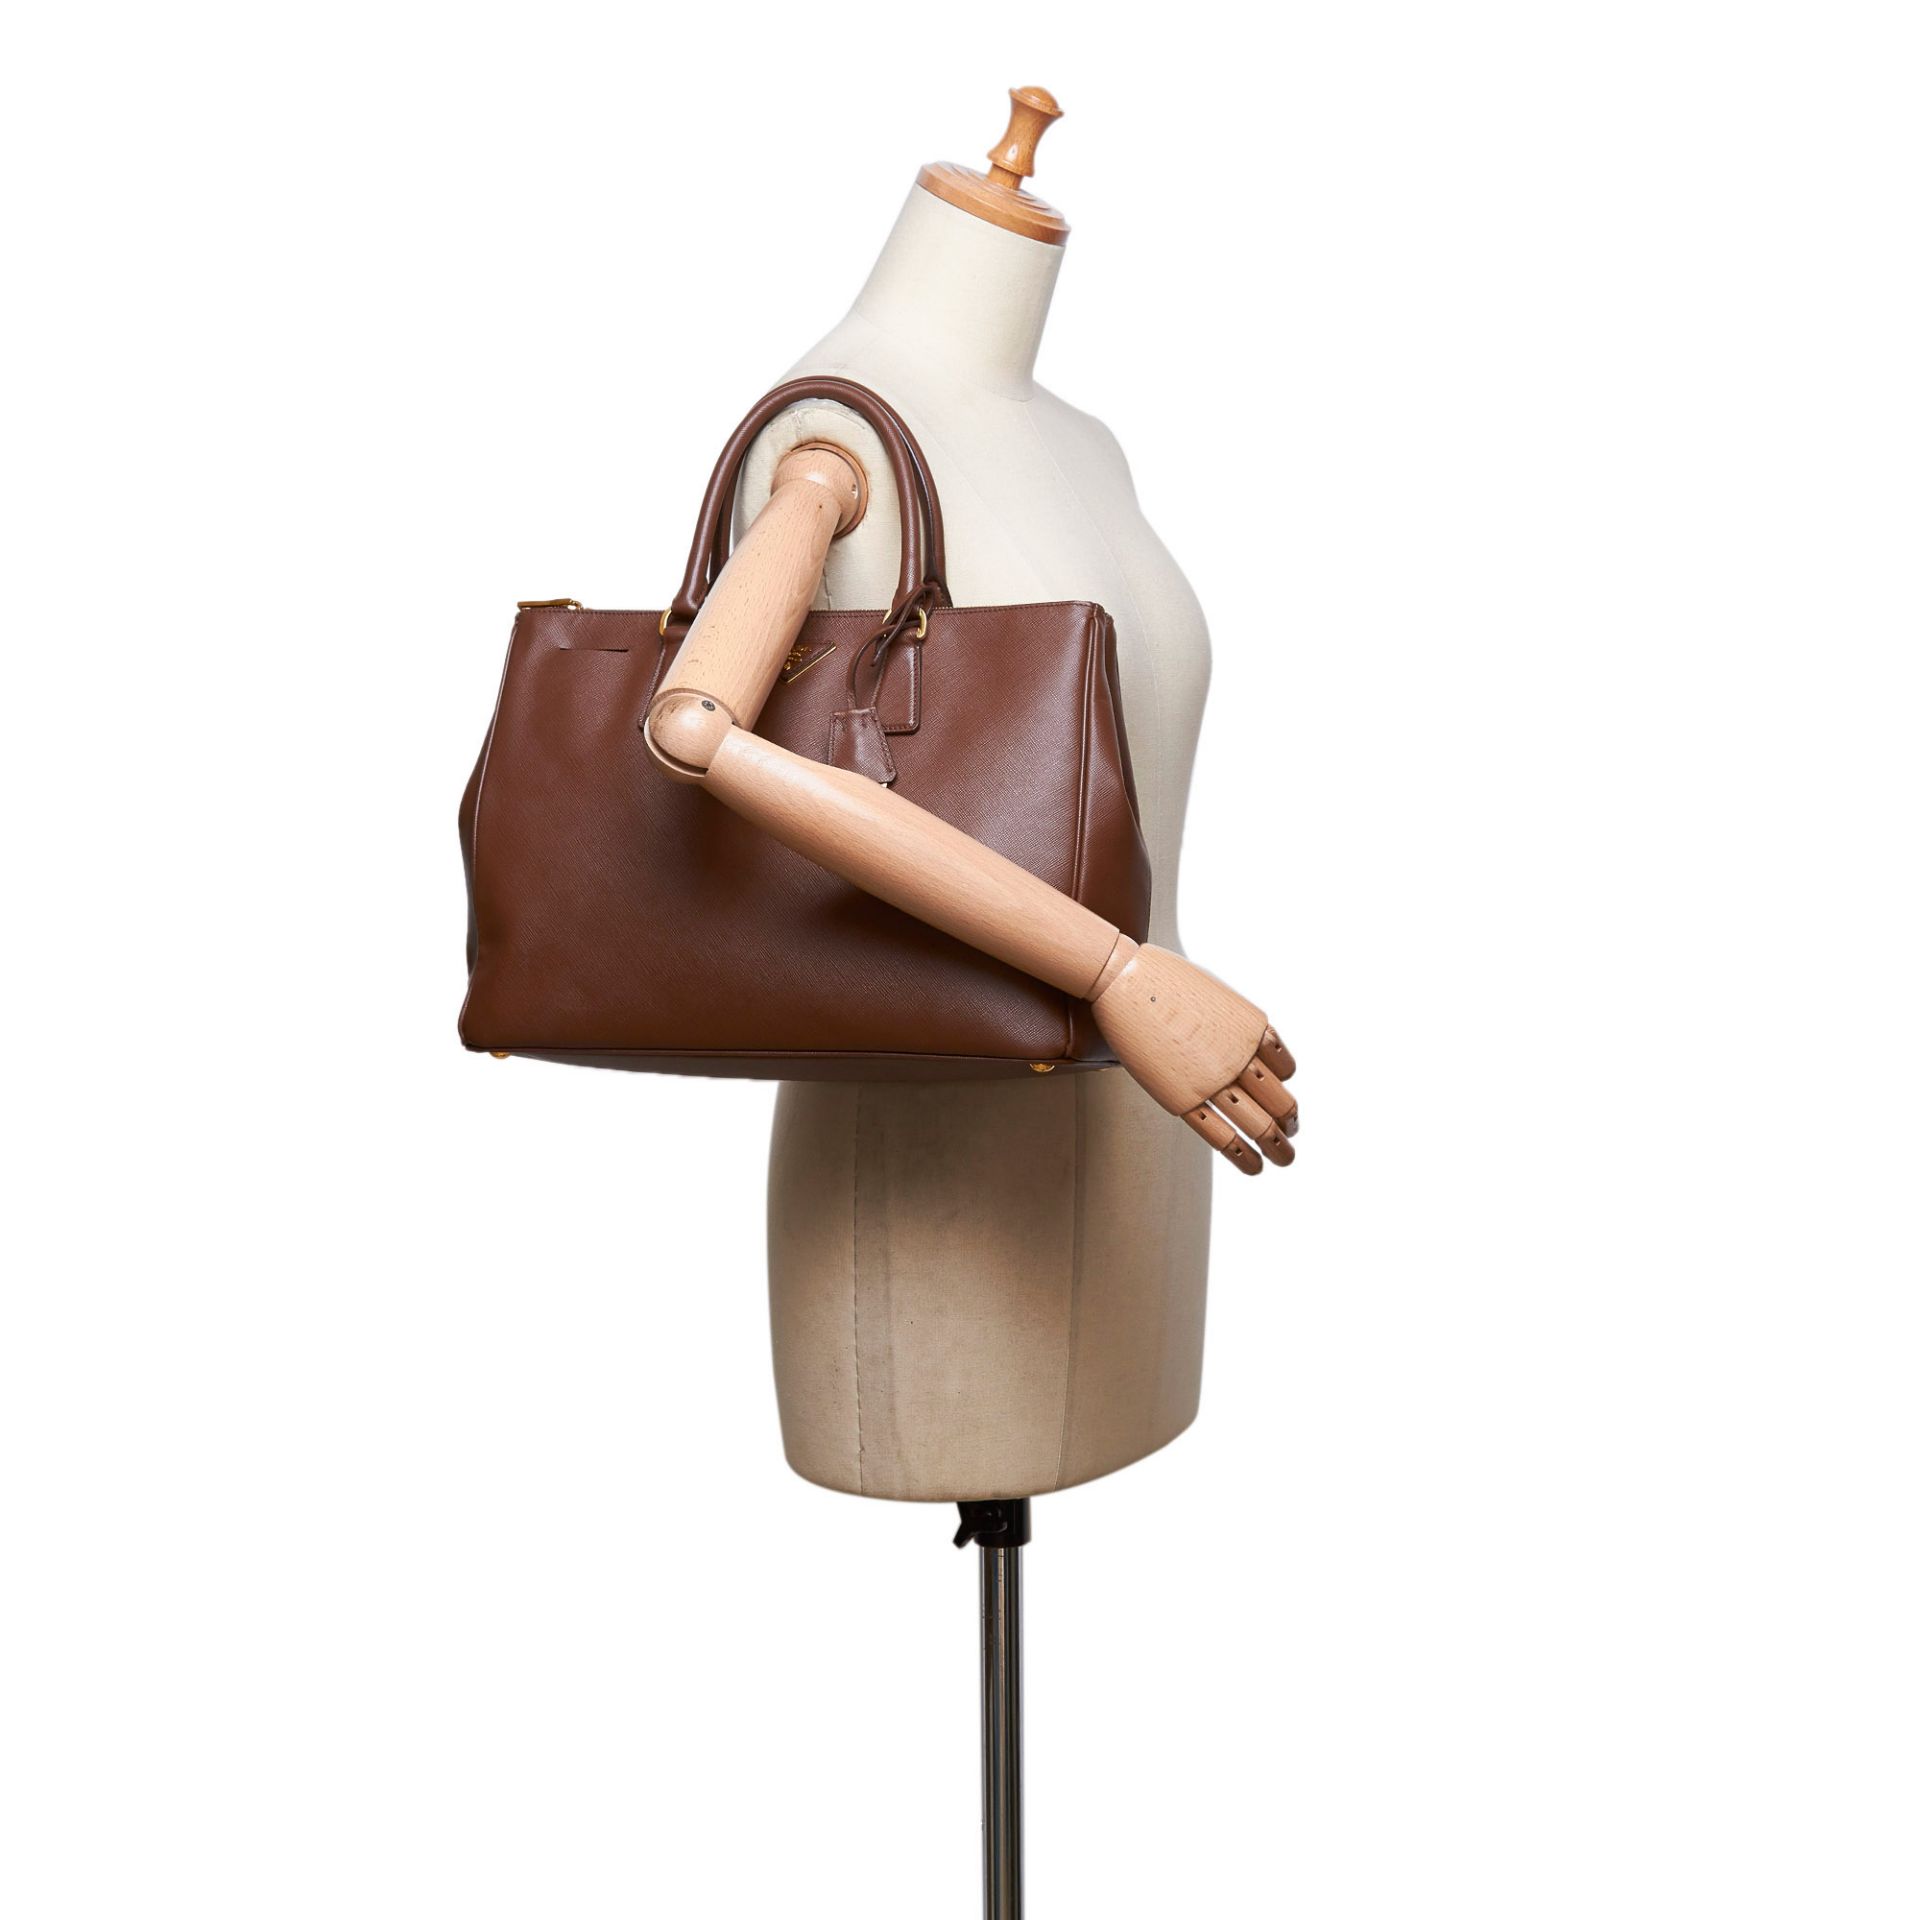 Prada Saffiano Leather Galleria Handbag - Image 5 of 10